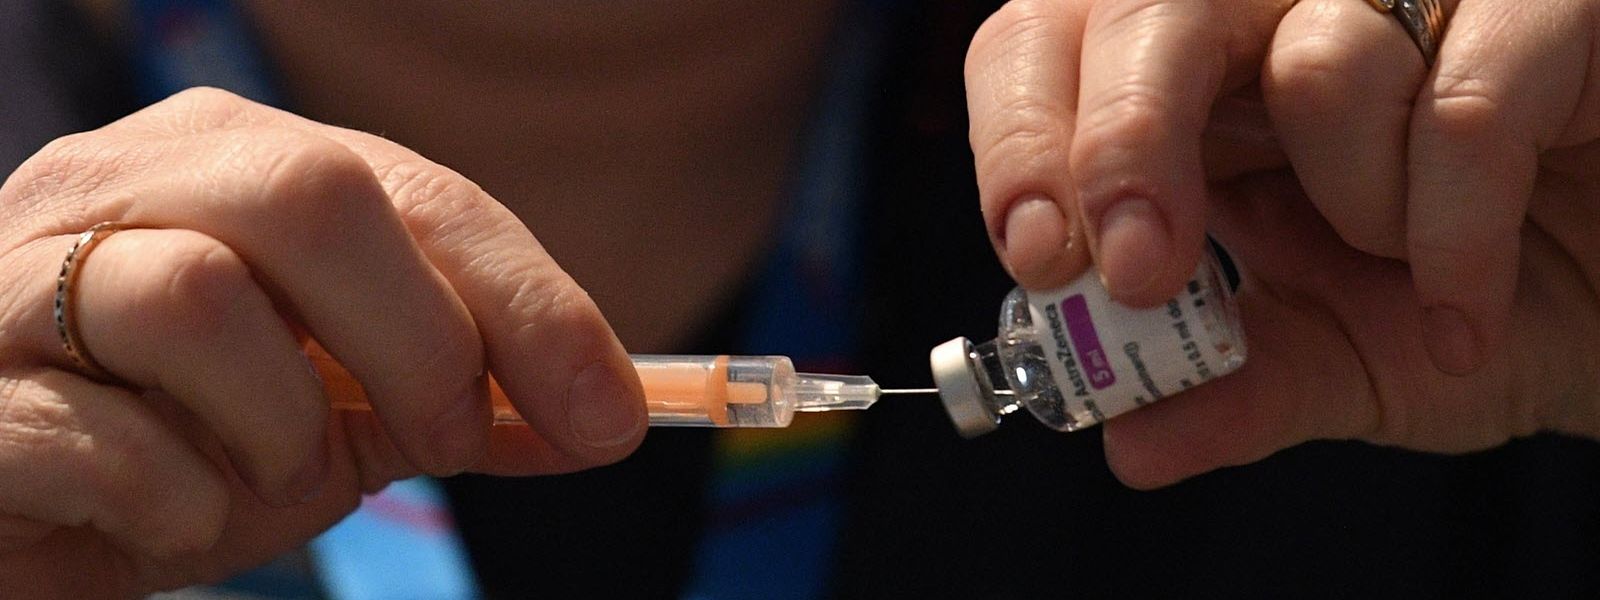 Le Luxembourg avait suspendu l'utilisation du vaccin jusqu'à ce que l'Agence européenne du médicament le déclare «sûr et efficace».